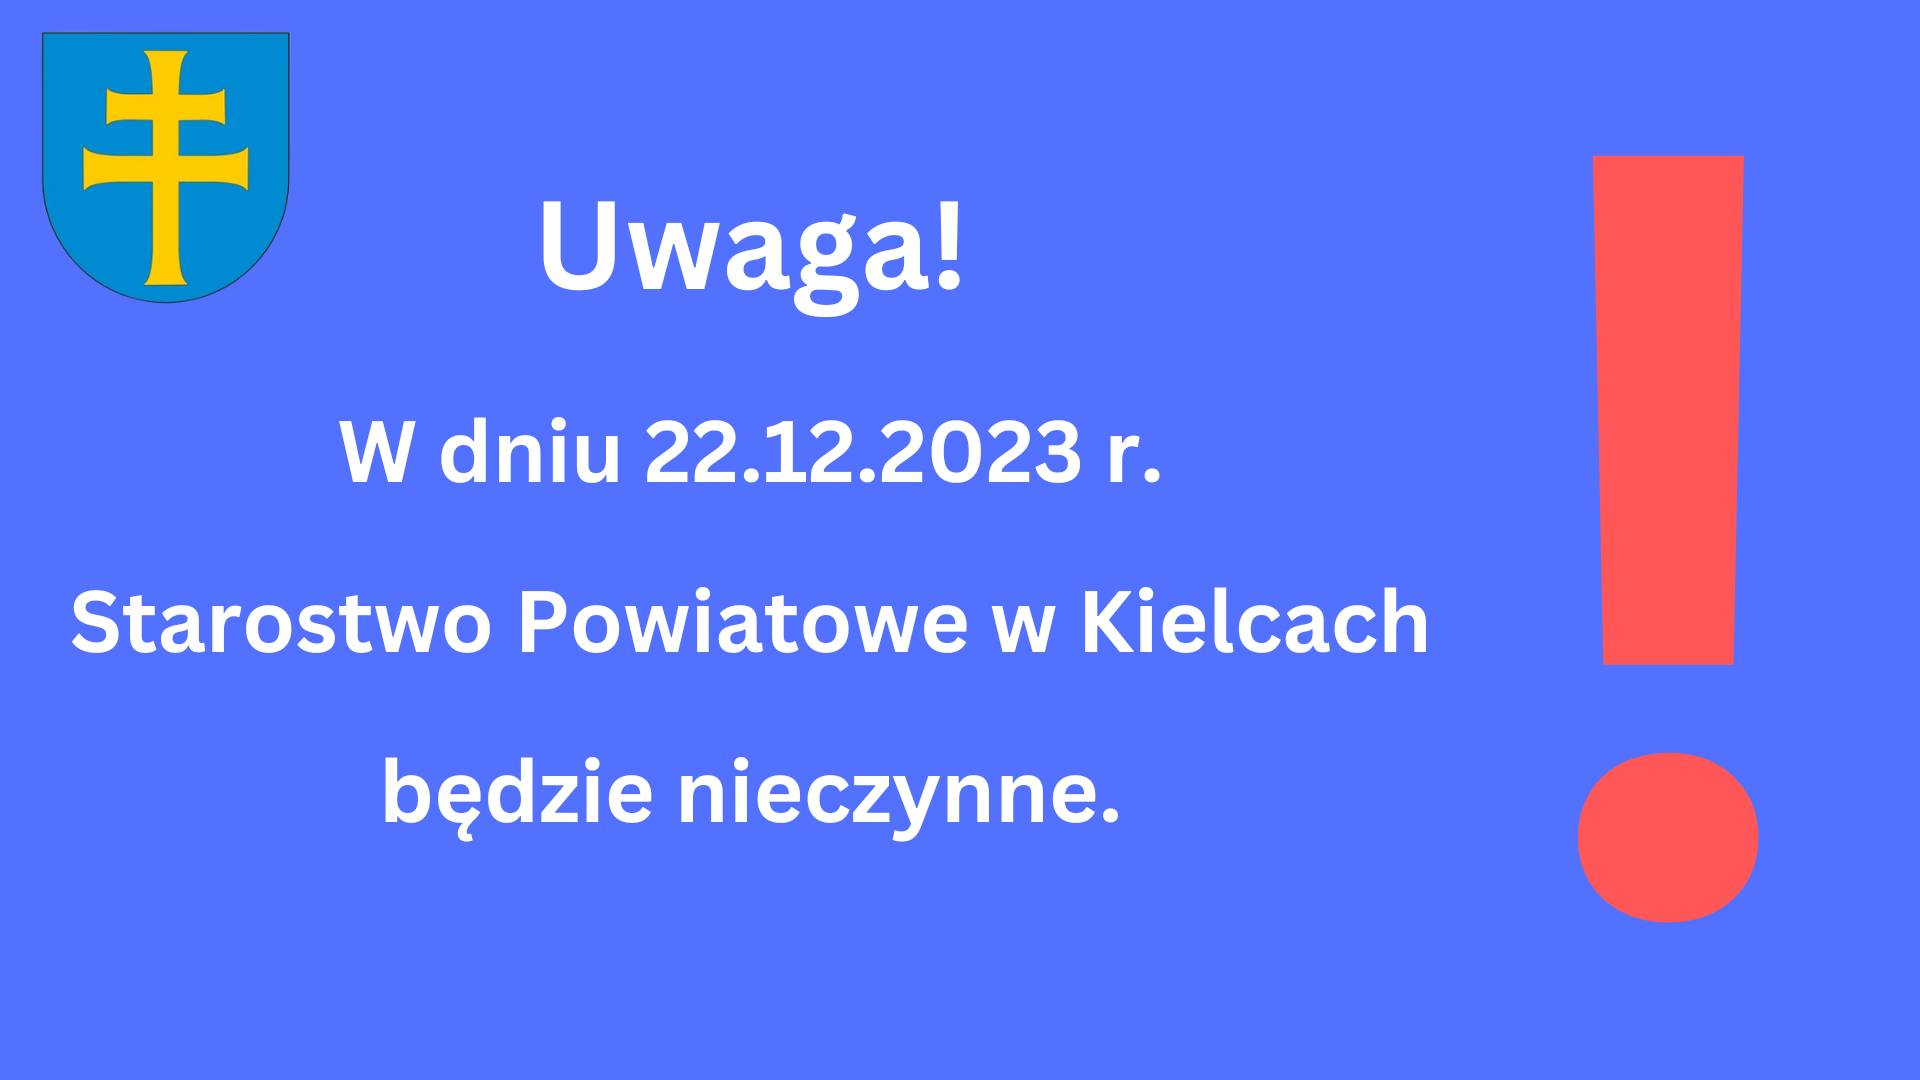 Uwaga! W dniu 22.12.2023 - Starostwo Powiatowe w Kielcach będzie nieczynne!